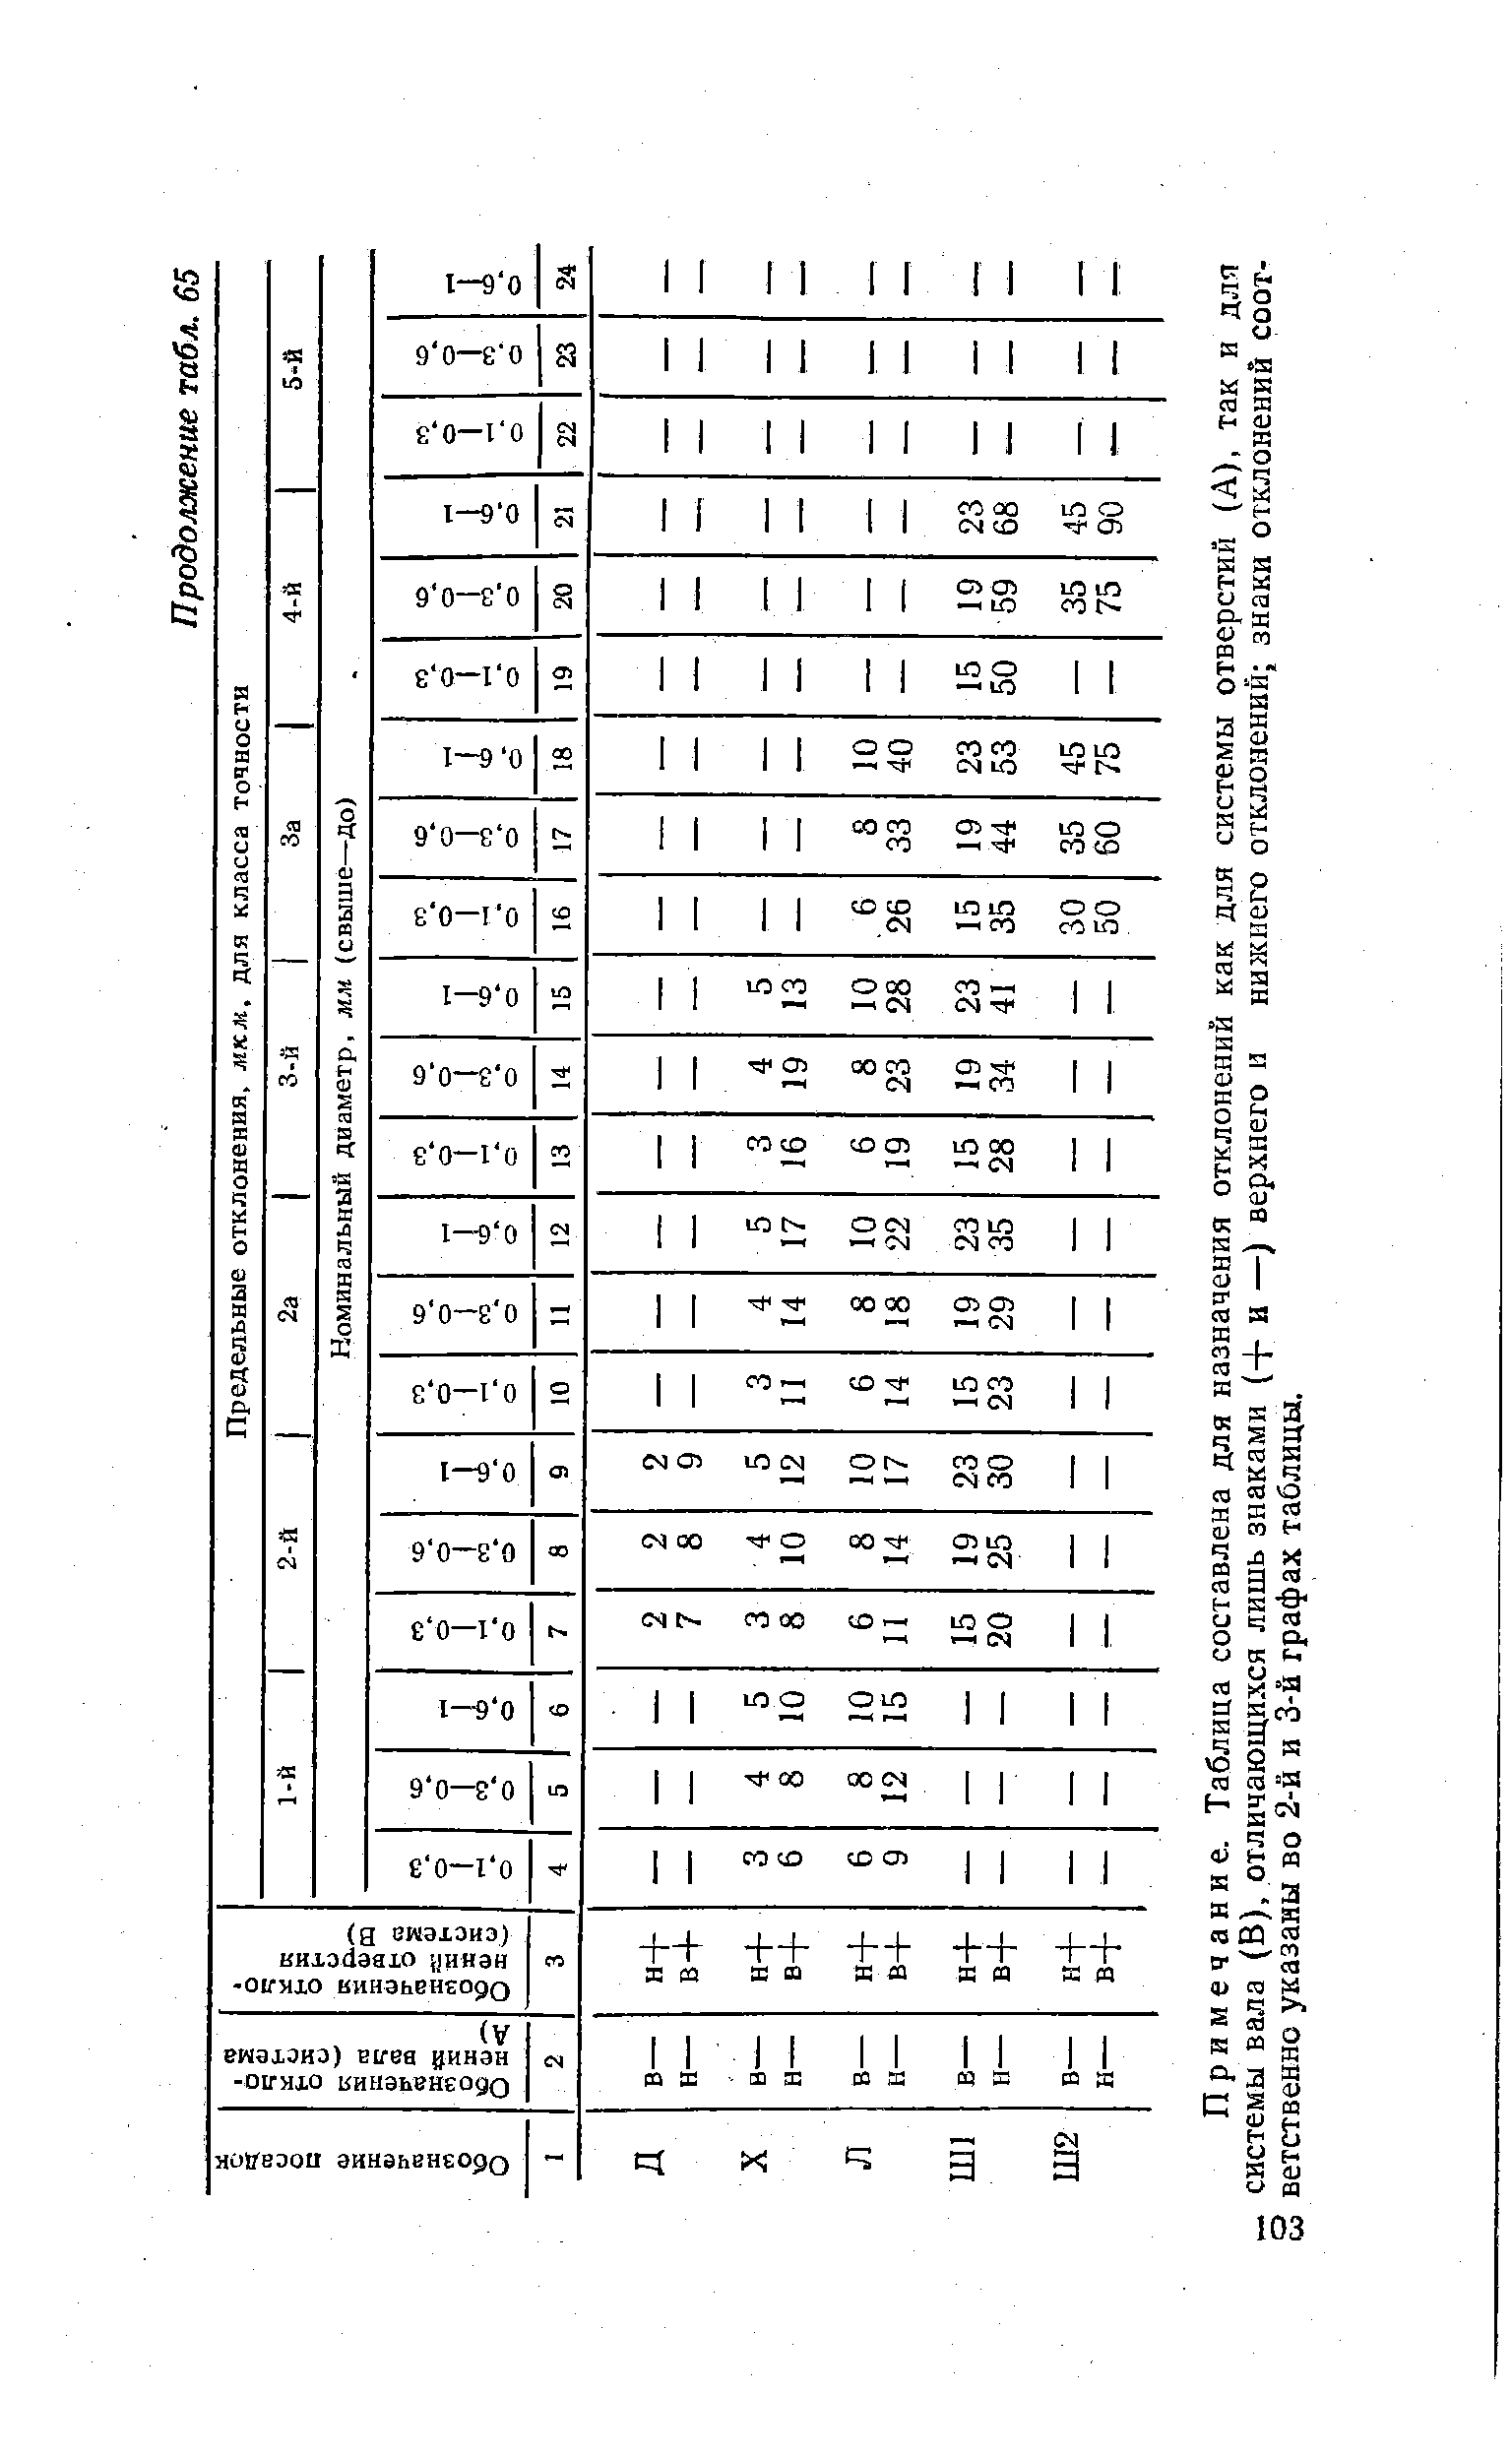 Примечание. Таблица составлена для назначения отклонений как для системы отверстий (А), так и для системы вала (В), отличающихся лишь знаками (+ и —) верхнего и нижнего отклонений знаки отклонений соот-3 ветственно указаны во 2-й и 3-й графах таблицы.
